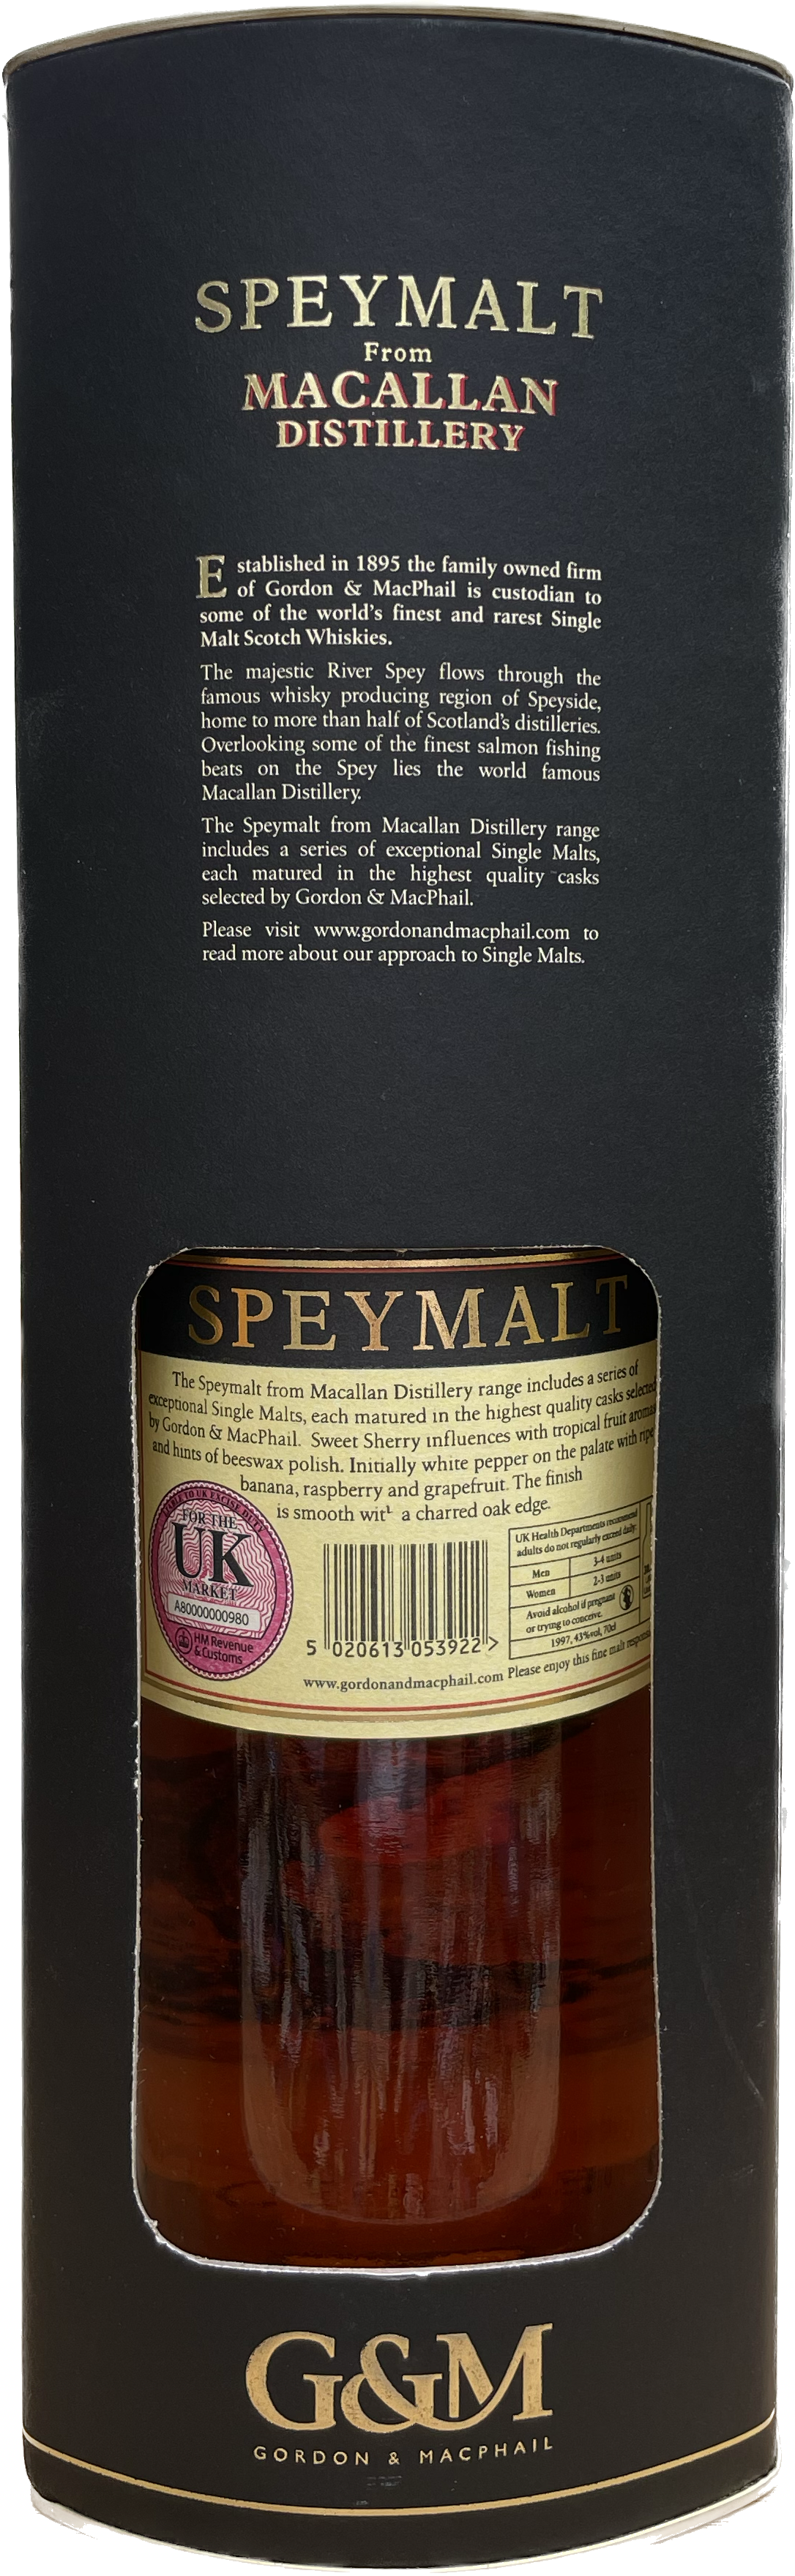 Speymalt Macallan von 1997 Single Malt Whisky